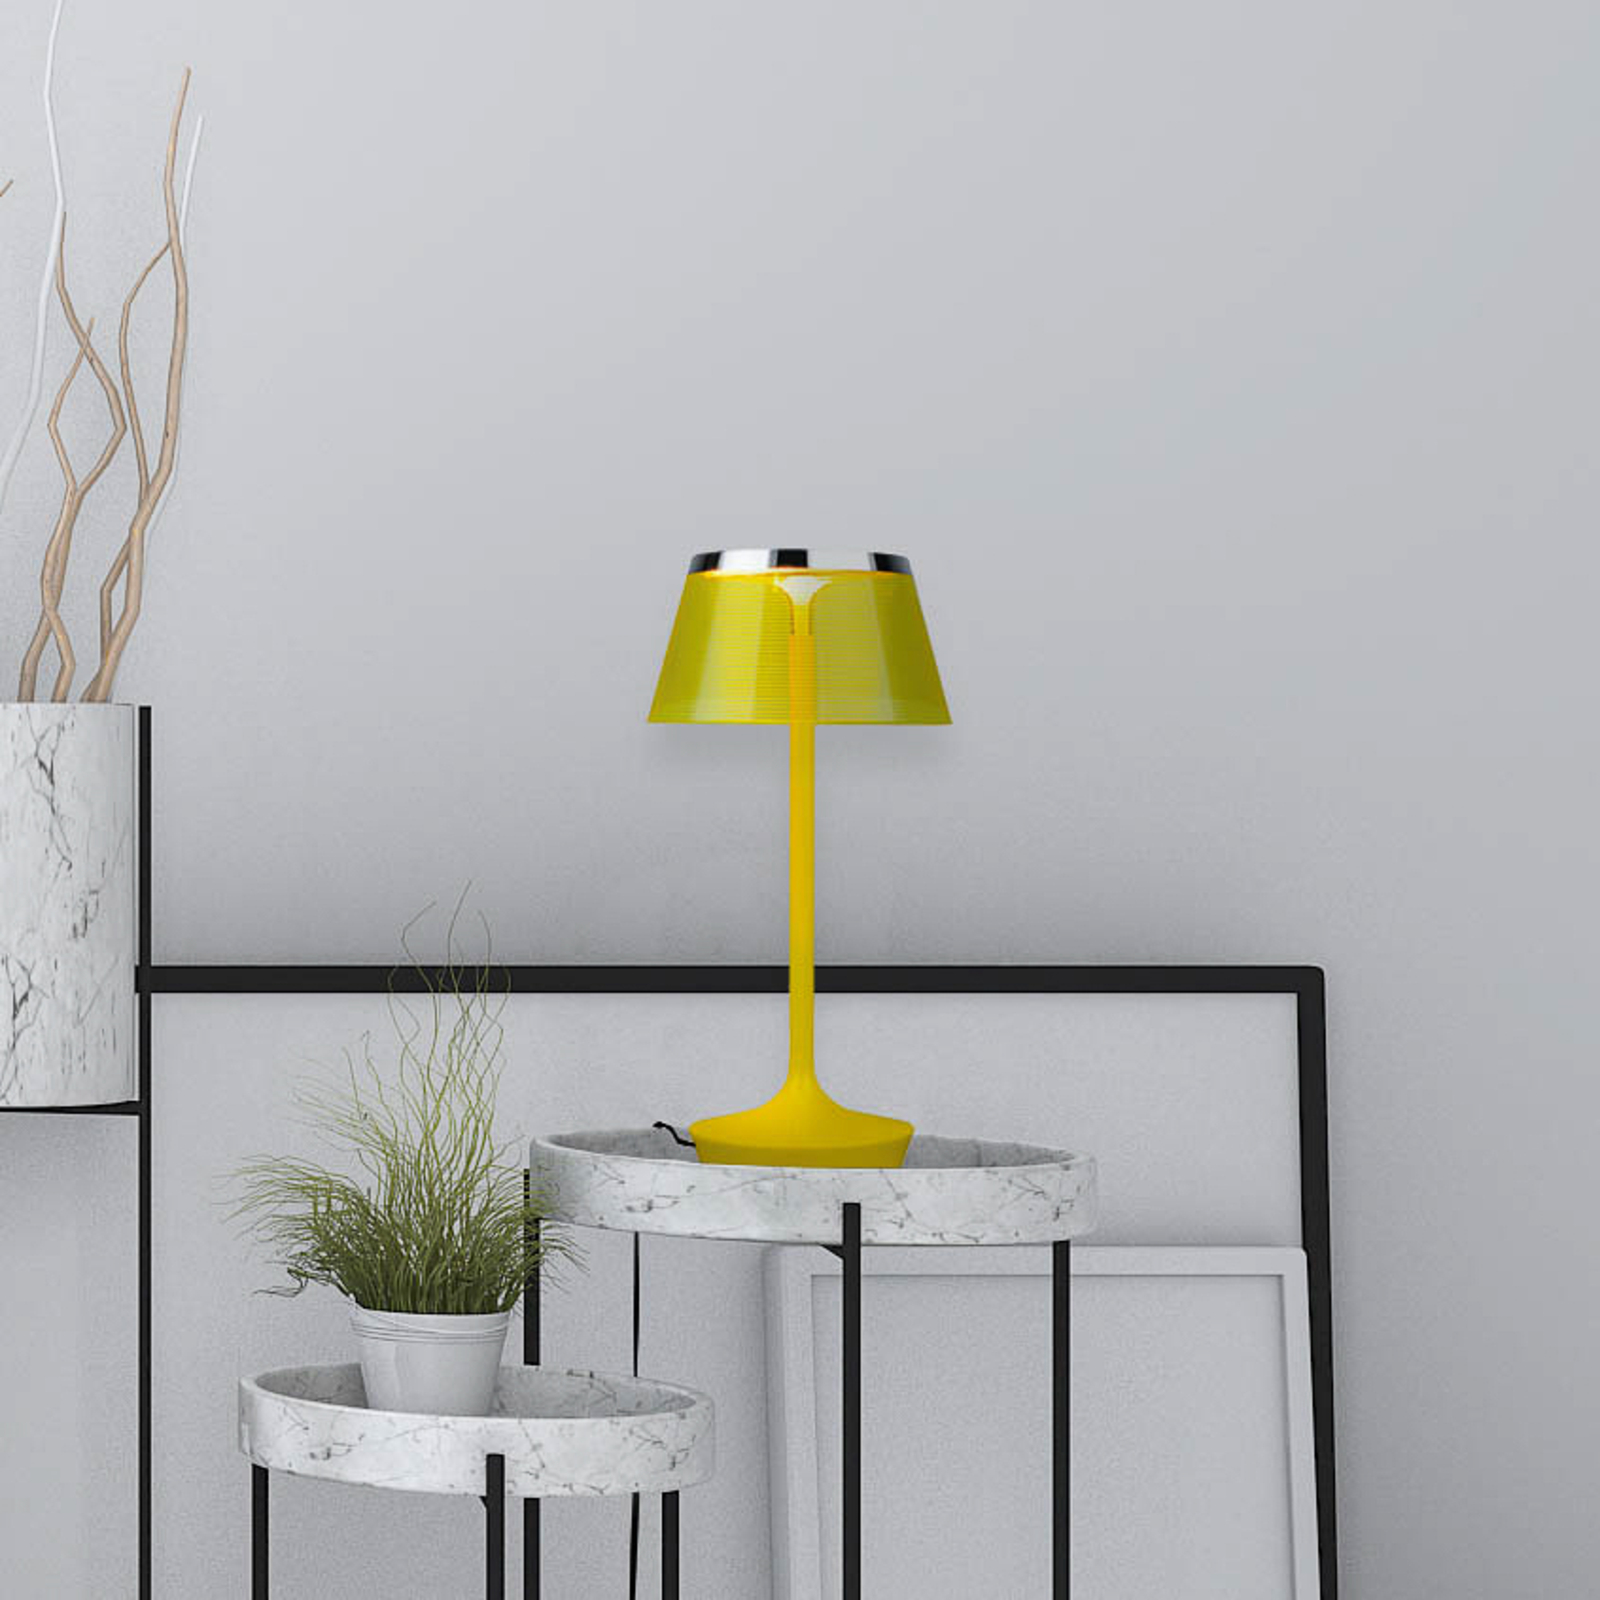 Aluminor La Petite Lampe LED-Tischlampe, gelb